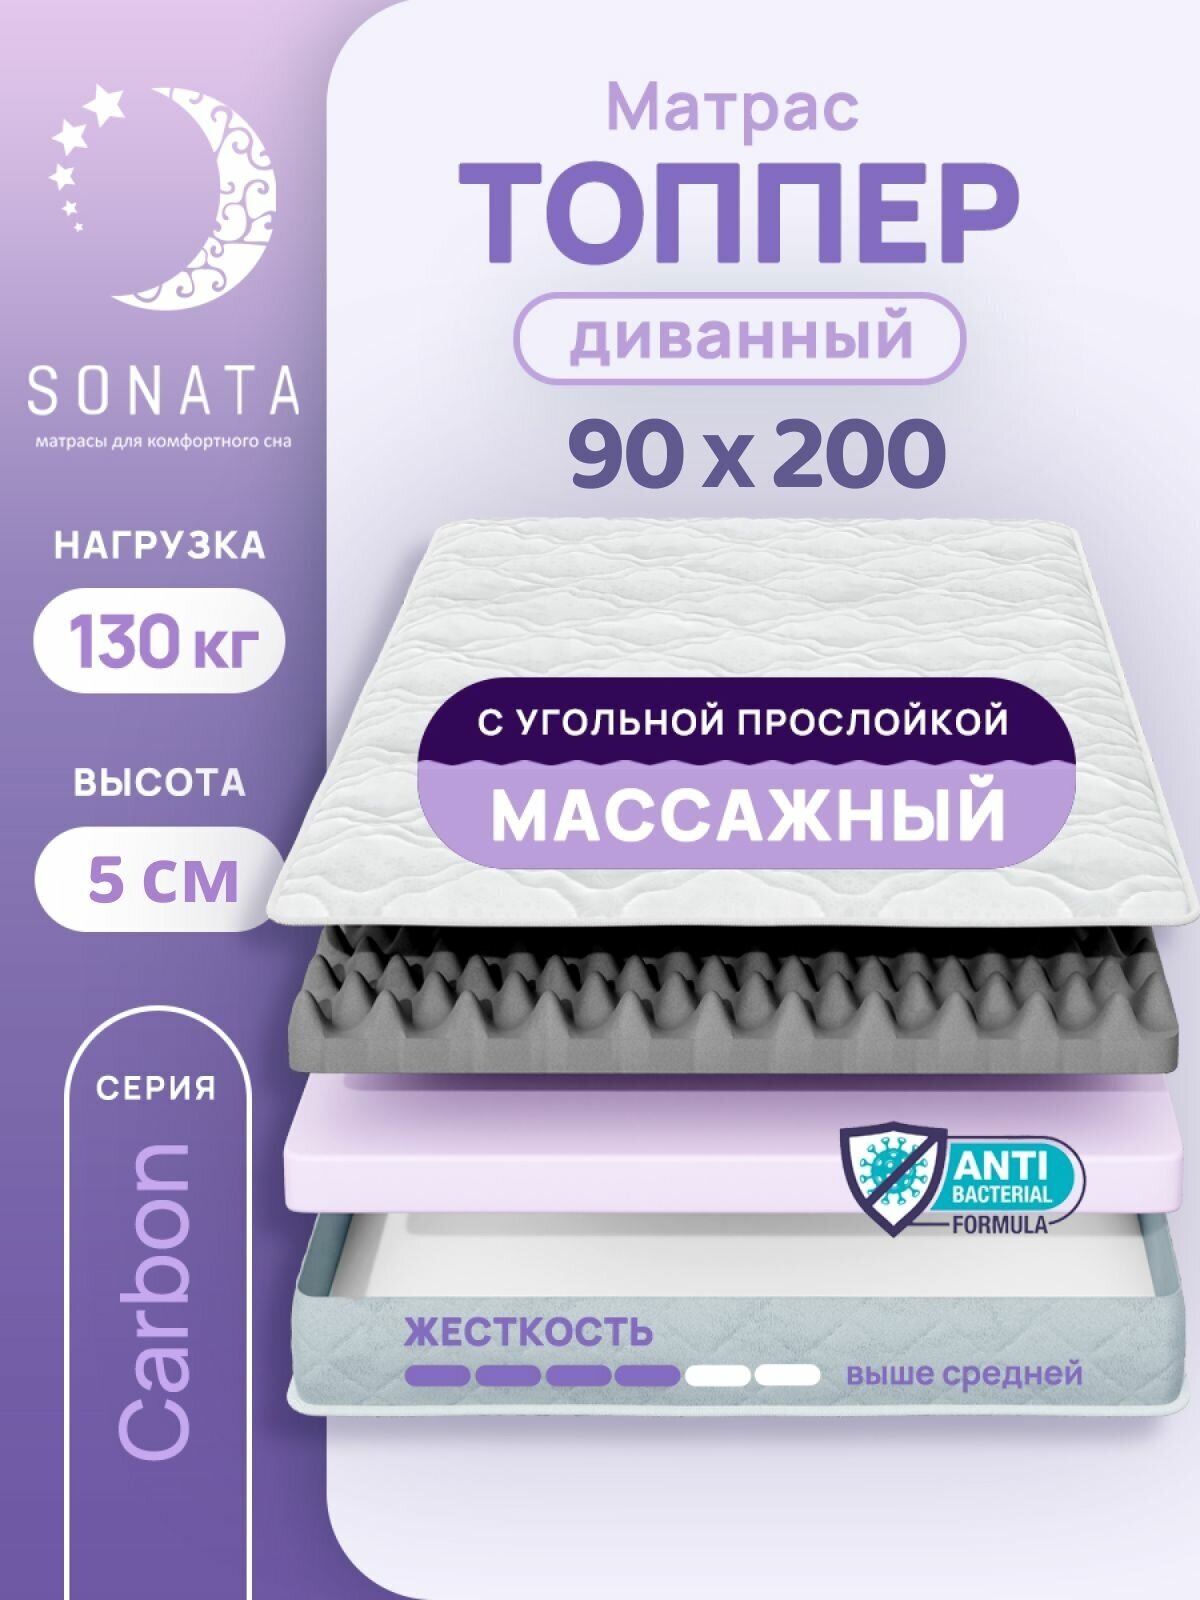 Топпер матрас 90х200 см SONATA, ортопедический, беспружинный, односпальный, тонкий матрац для дивана, кровати, высота 5 см с массажным эффектом